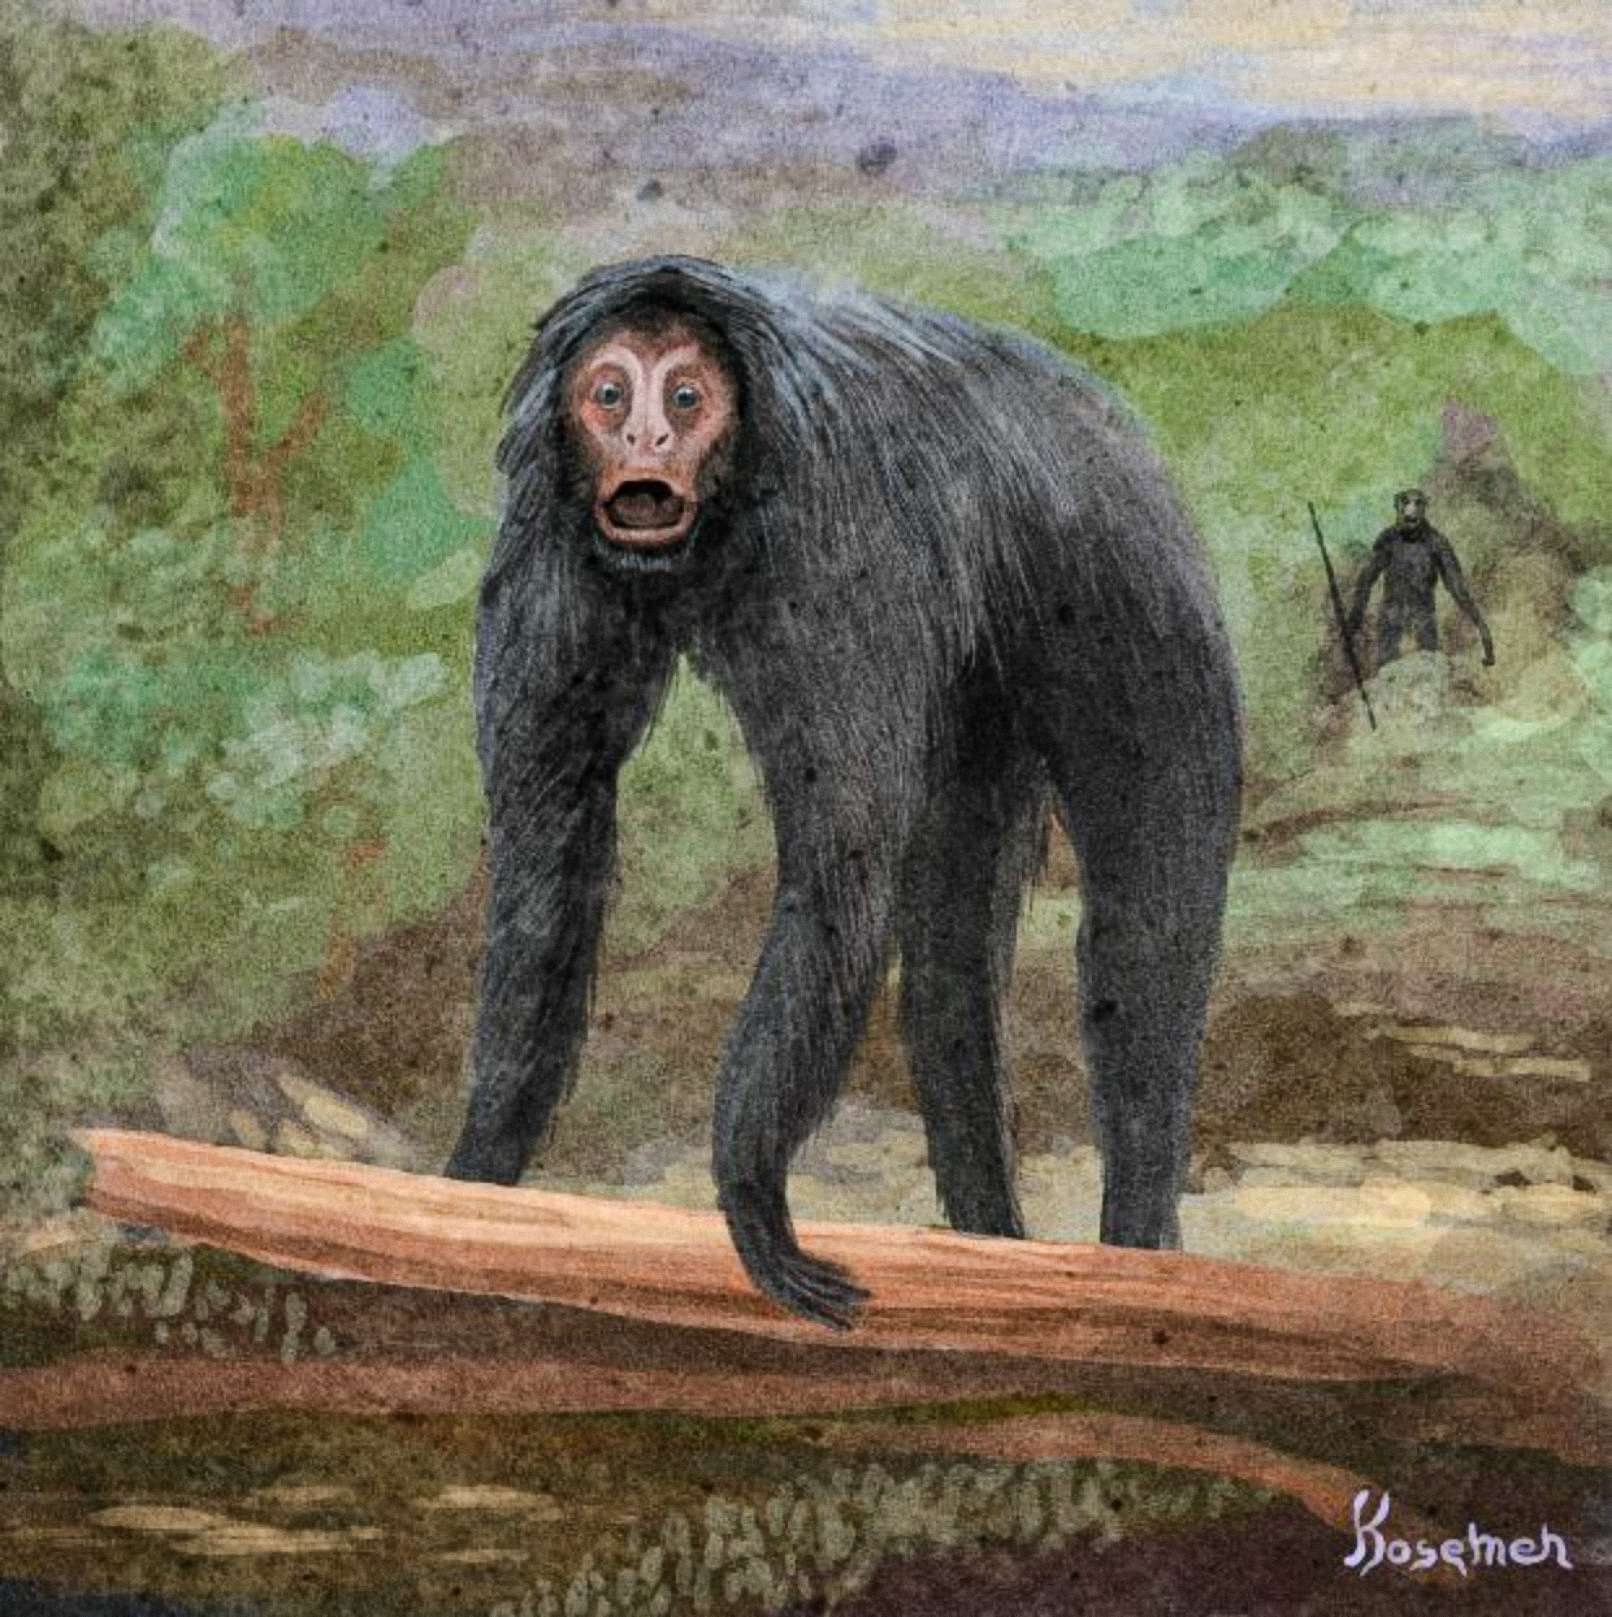 Një interpretim spekulativ i ngjarjes, primati tjetër i paraqitur në pjesën e pasme me një vegël në dorë (art nga Kosemen)